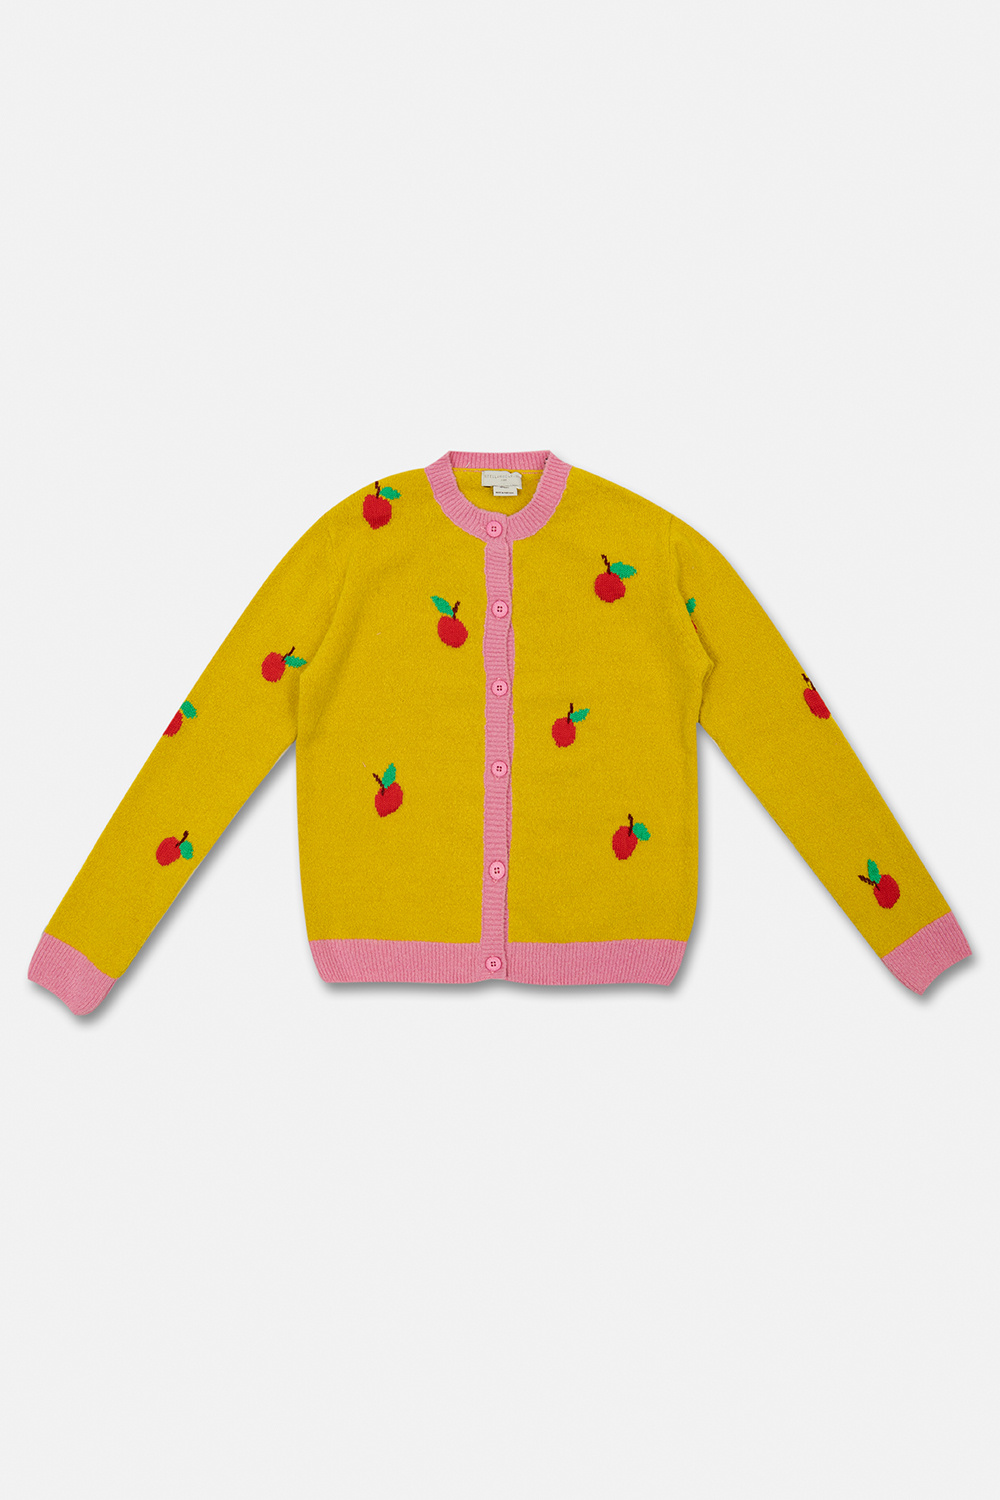 stella sandal McCartney Kids Cardigan with fruit motif